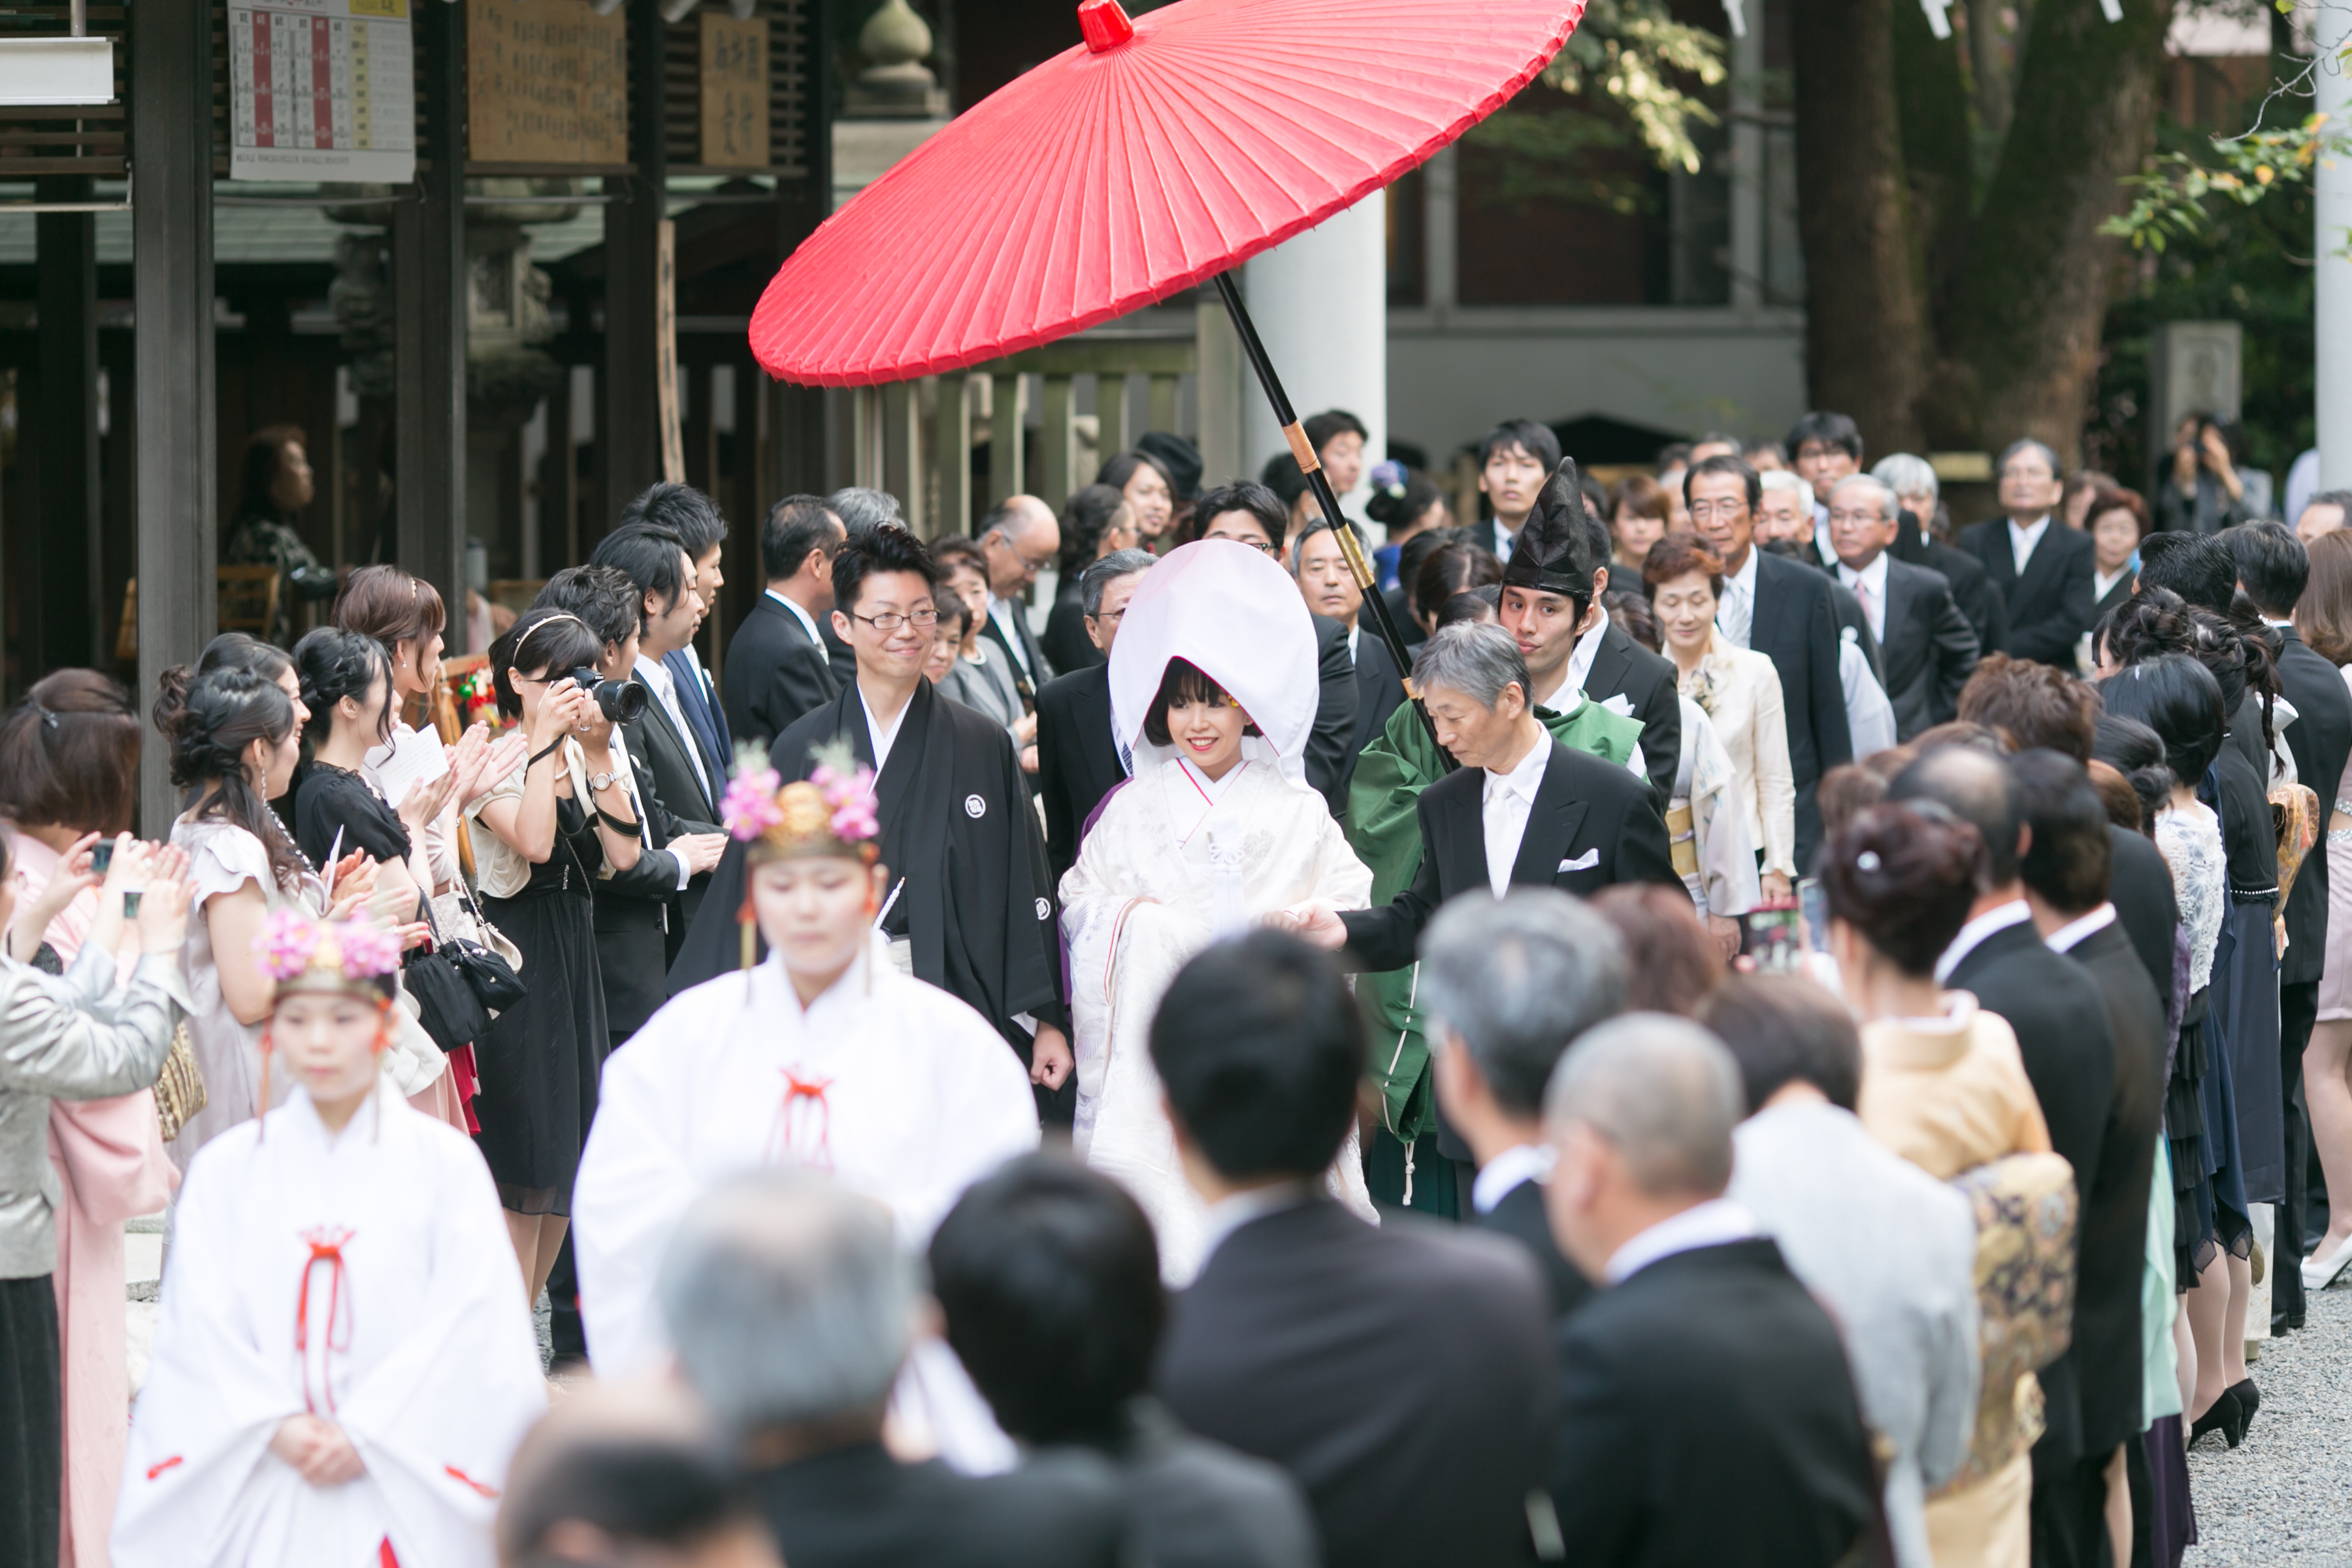 126人全員が神社での神前式に列席 〜披露宴は笑いに包まれて大満足の一日に〜 日本の結婚式